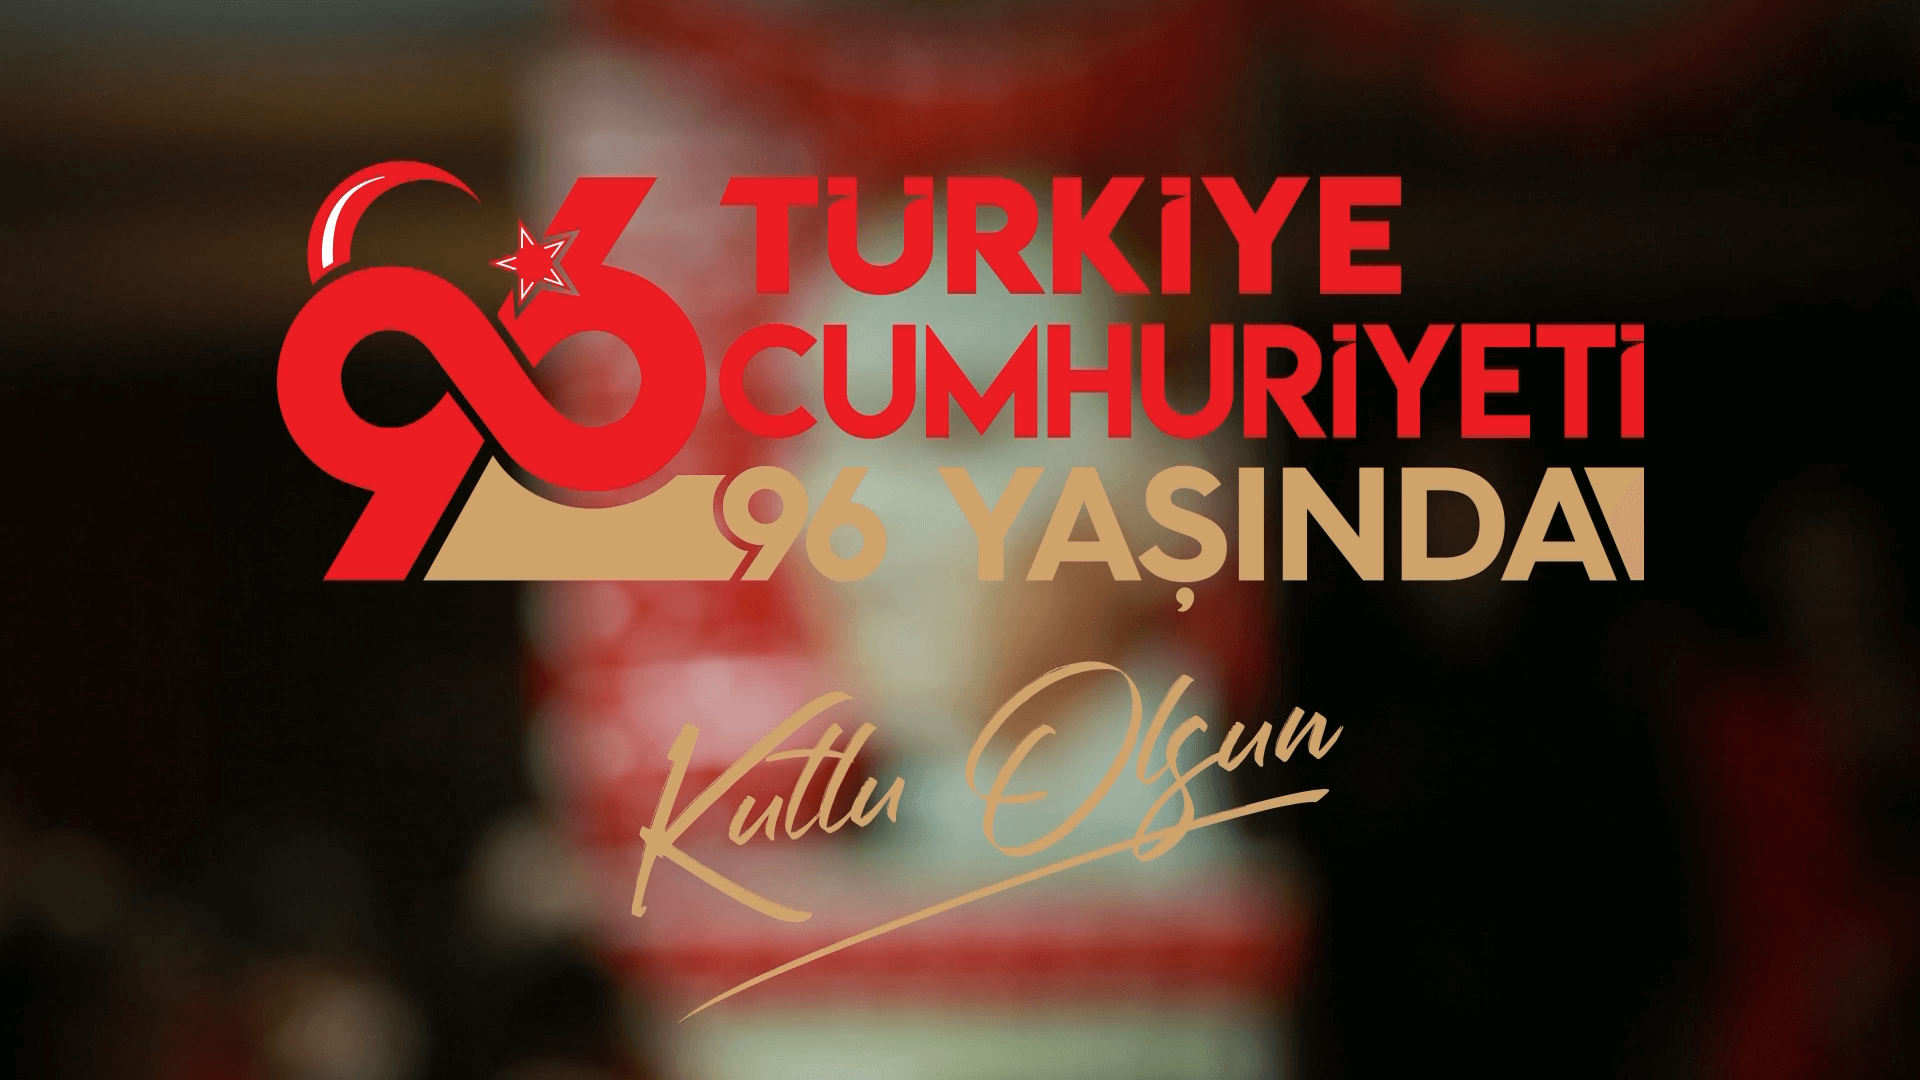 Turkish Republic Day - 29th October at Tarabya Campus